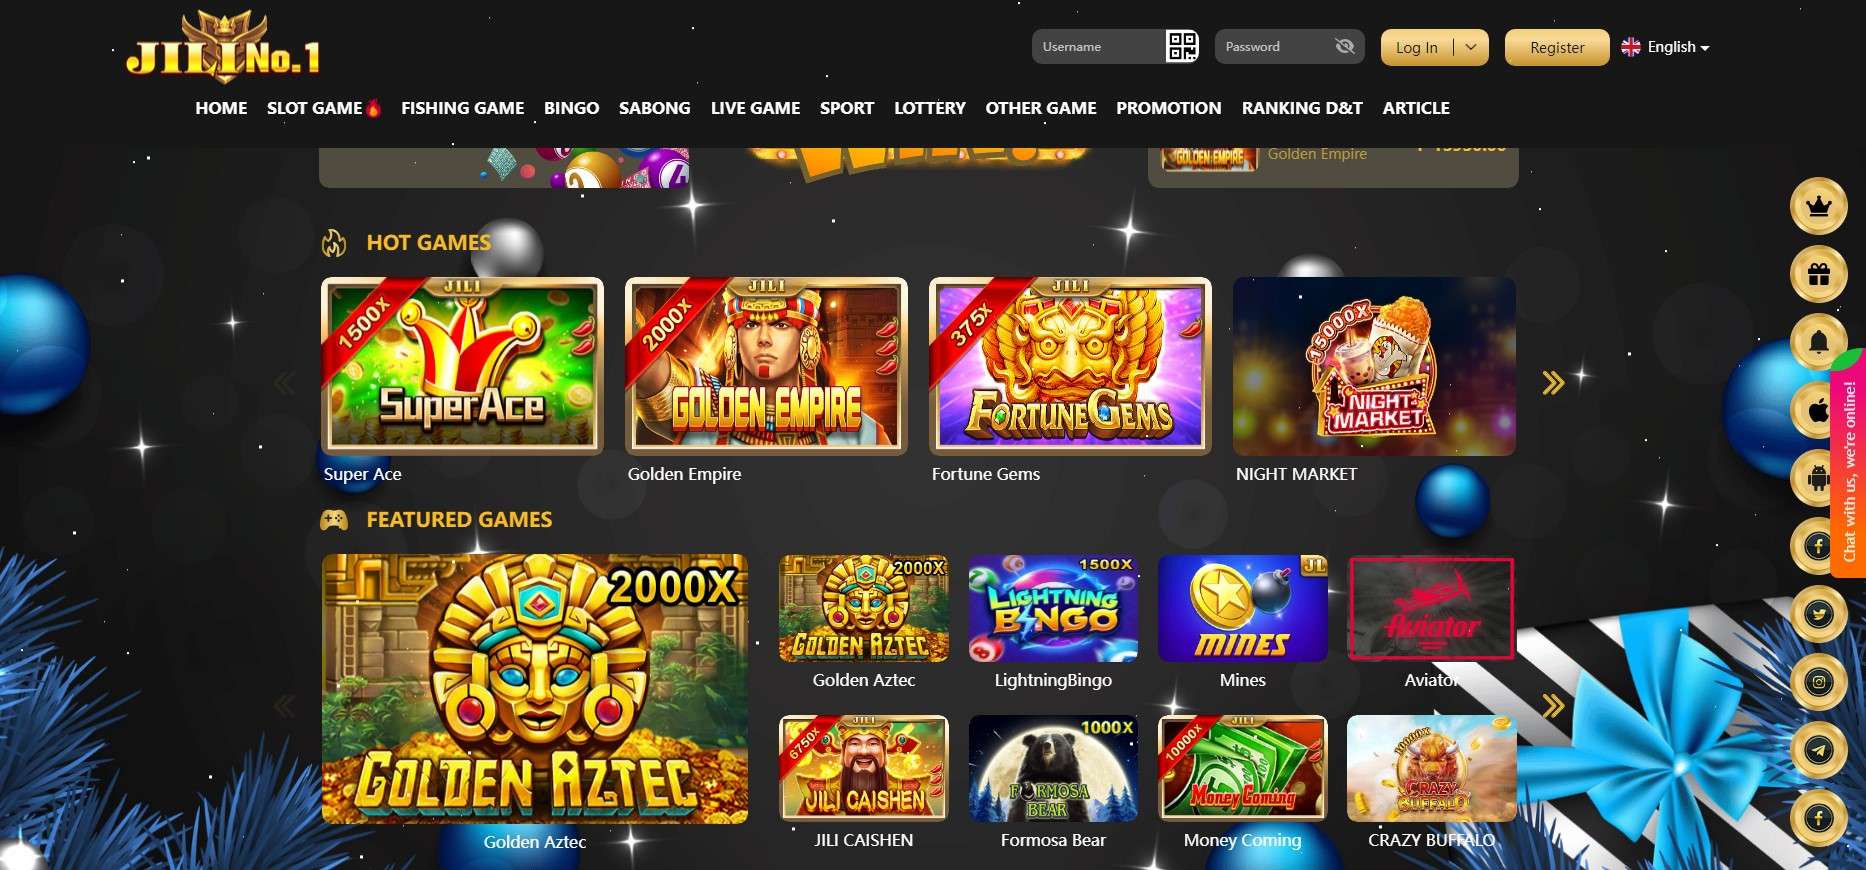 Jilino.1 online casino